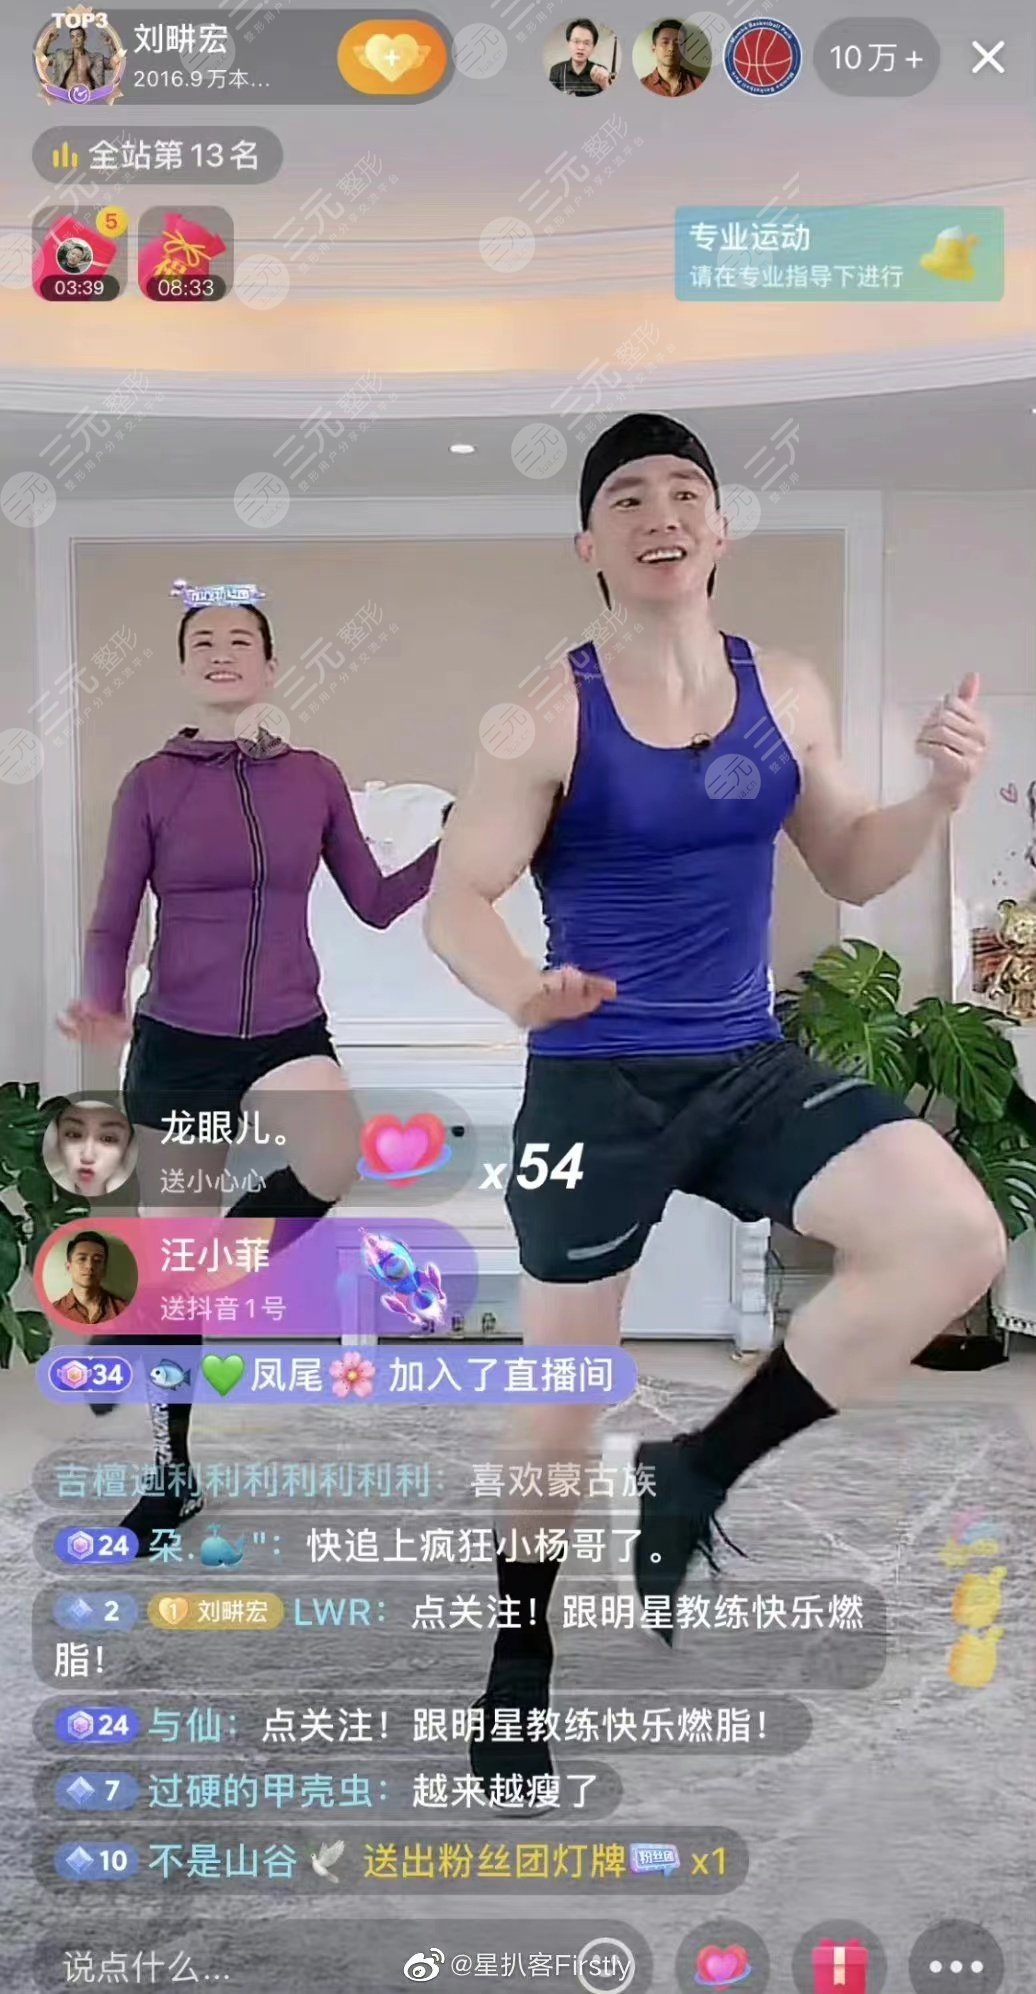 刘畊宏跟着健身会瘦吗？刘畊宏瘦身操有用吗？网友辣评：练着带劲儿！